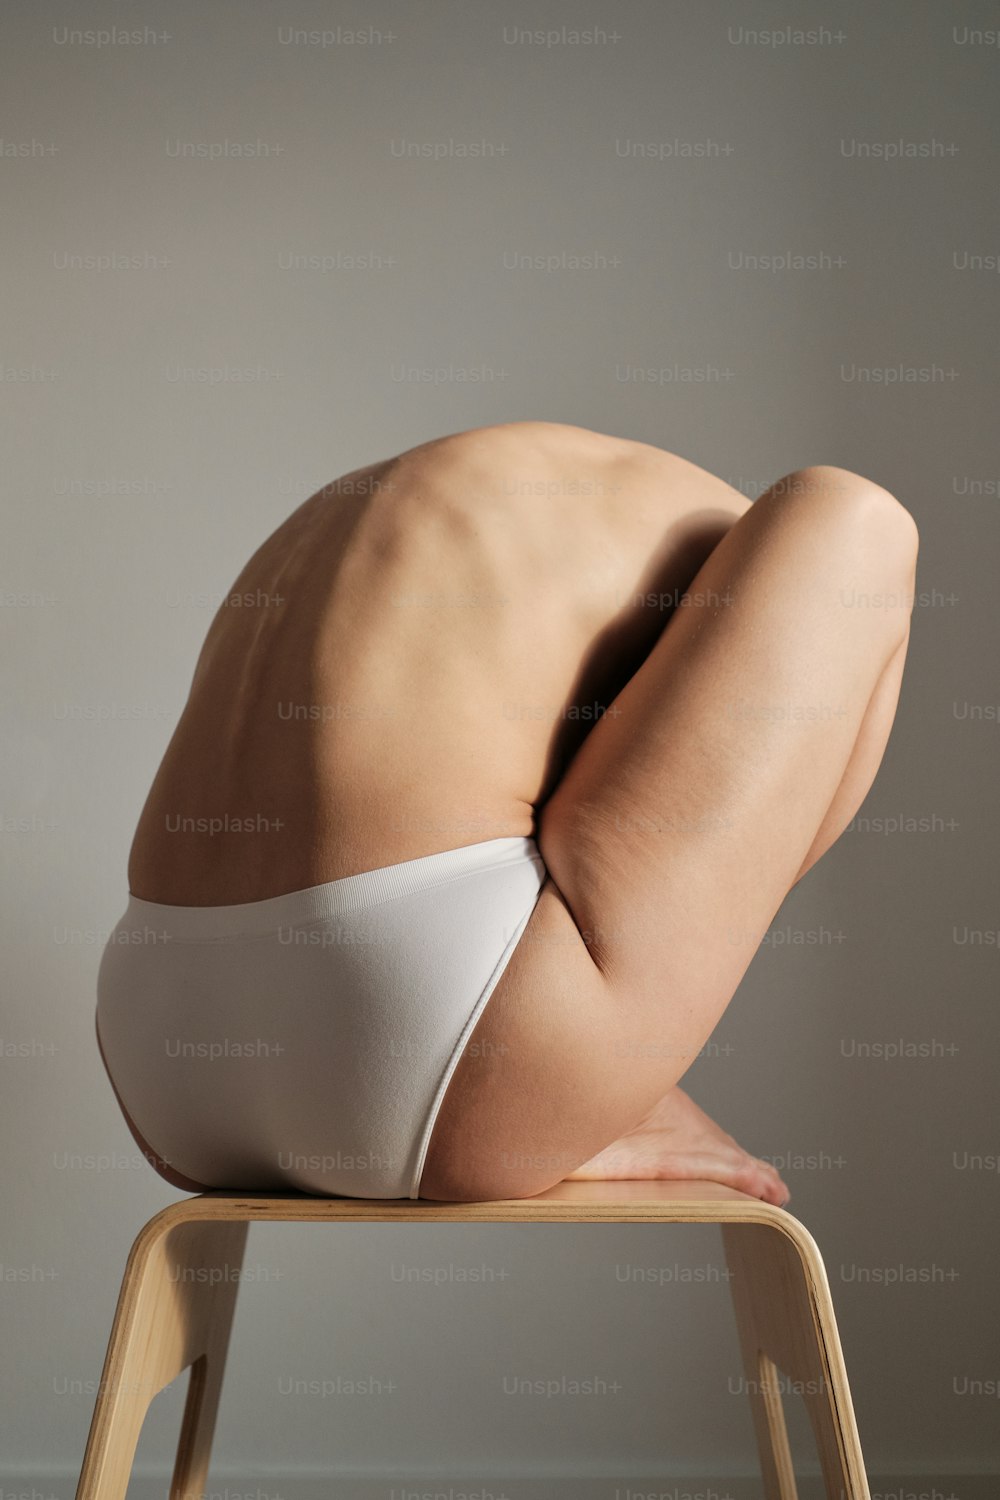 Une femme nue en bikini blanc assise sur une chaise en bois